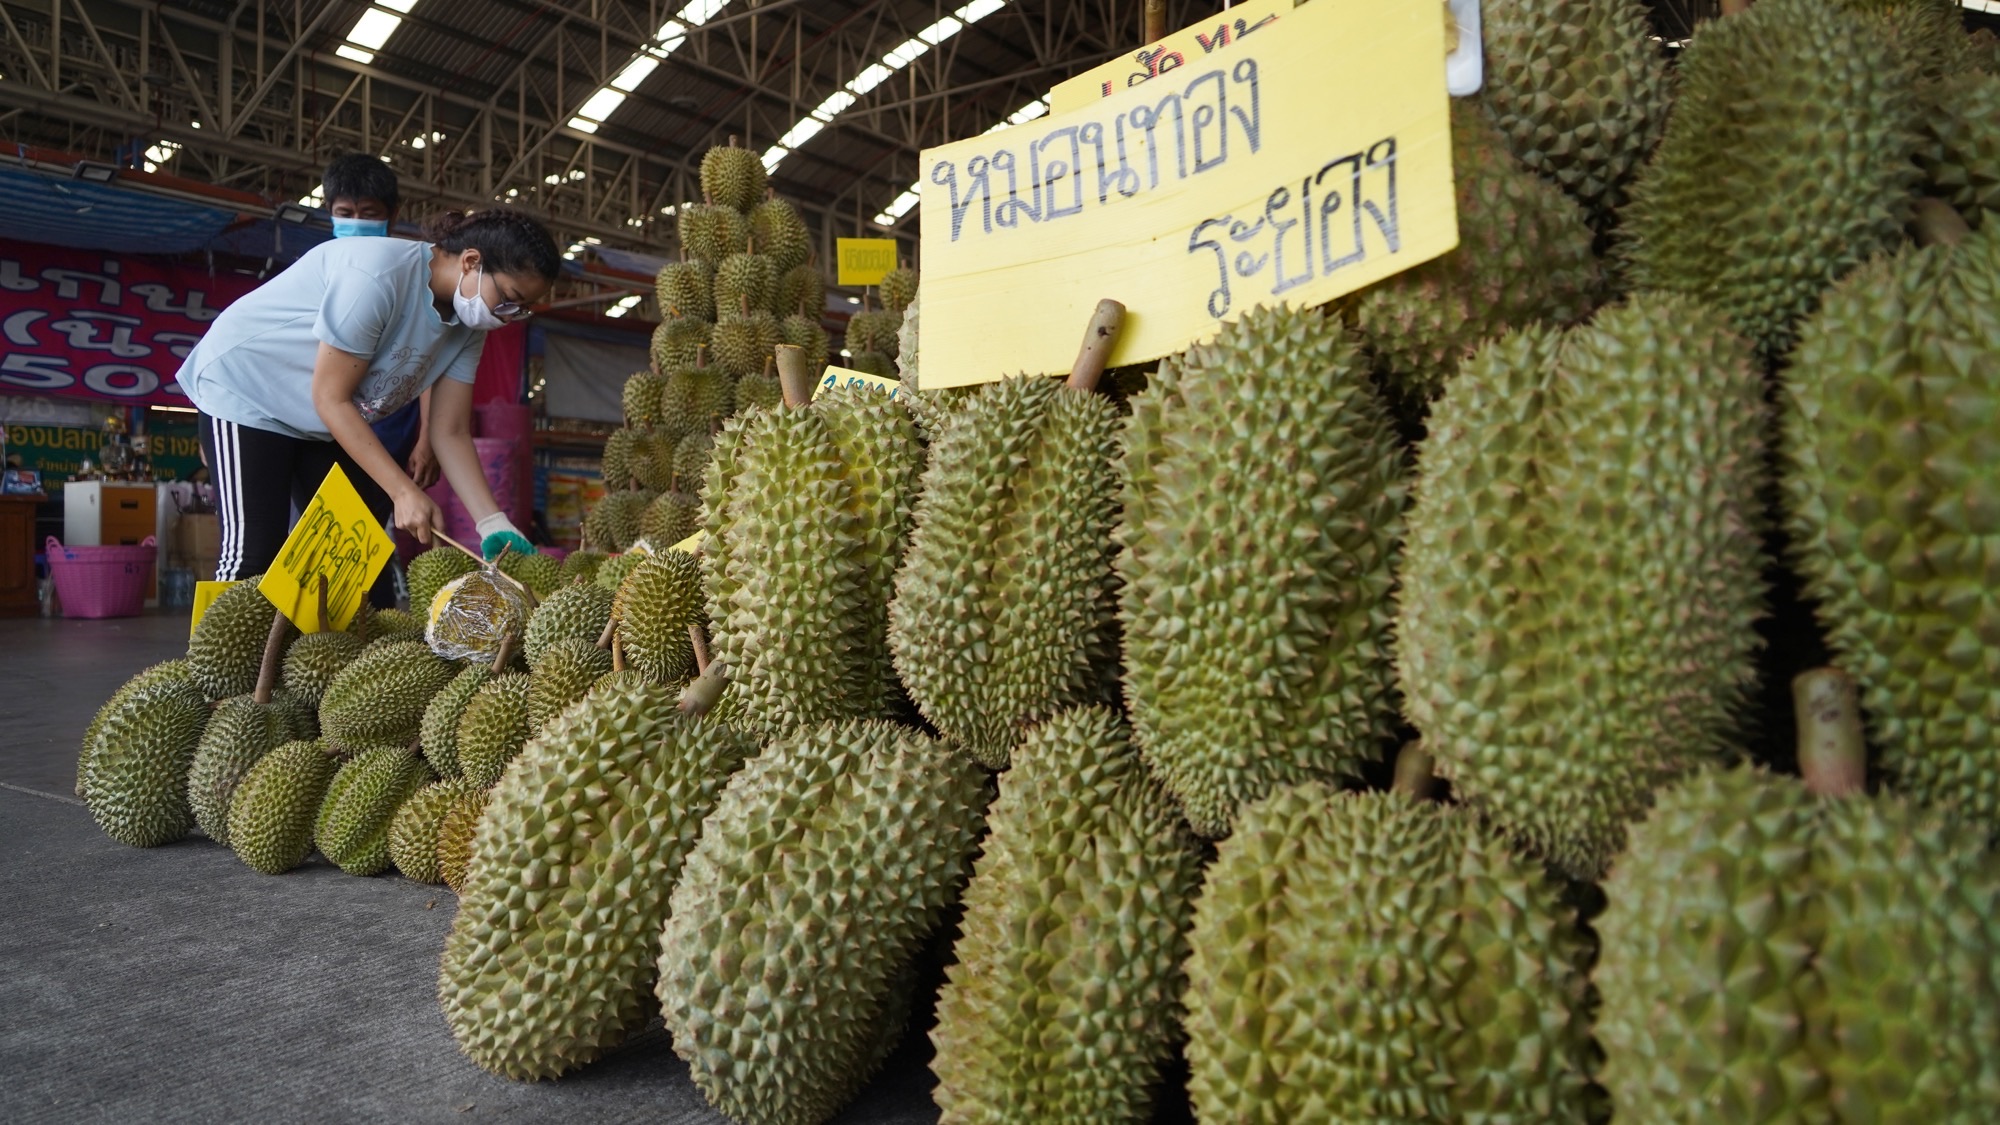 sầu riêng Thái Lan được xuất khẩu đi nhiều nơi trên thế giới và được mệnh danh là vua của các loại trái cây